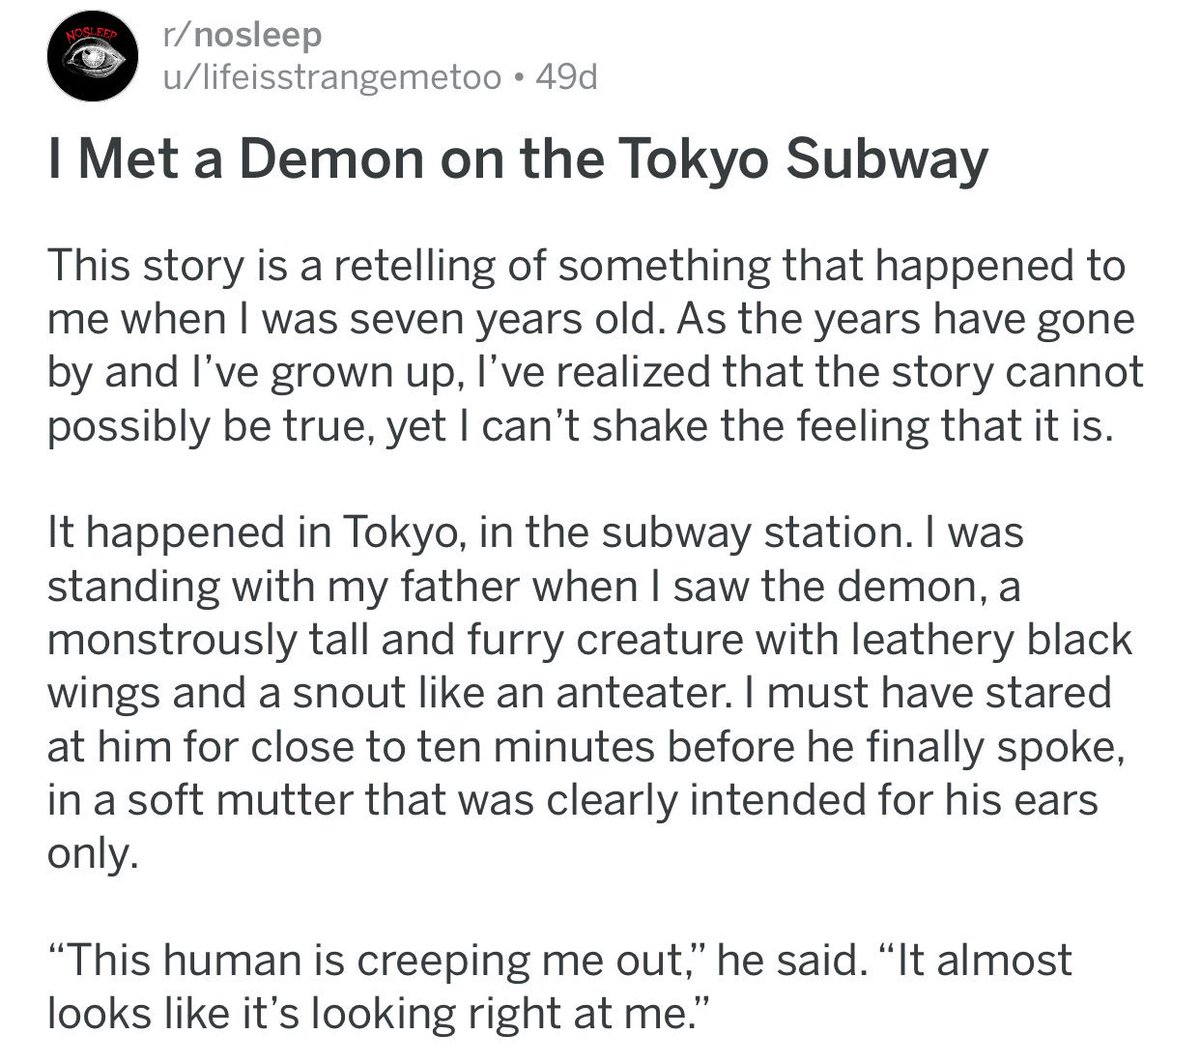 ↳ I met a demon on the Tokyo Subway{ https://www.reddit.com/r/nosleep/comments/7ifrz1/i_met_a_demon_on_the_tokyo_subway/}